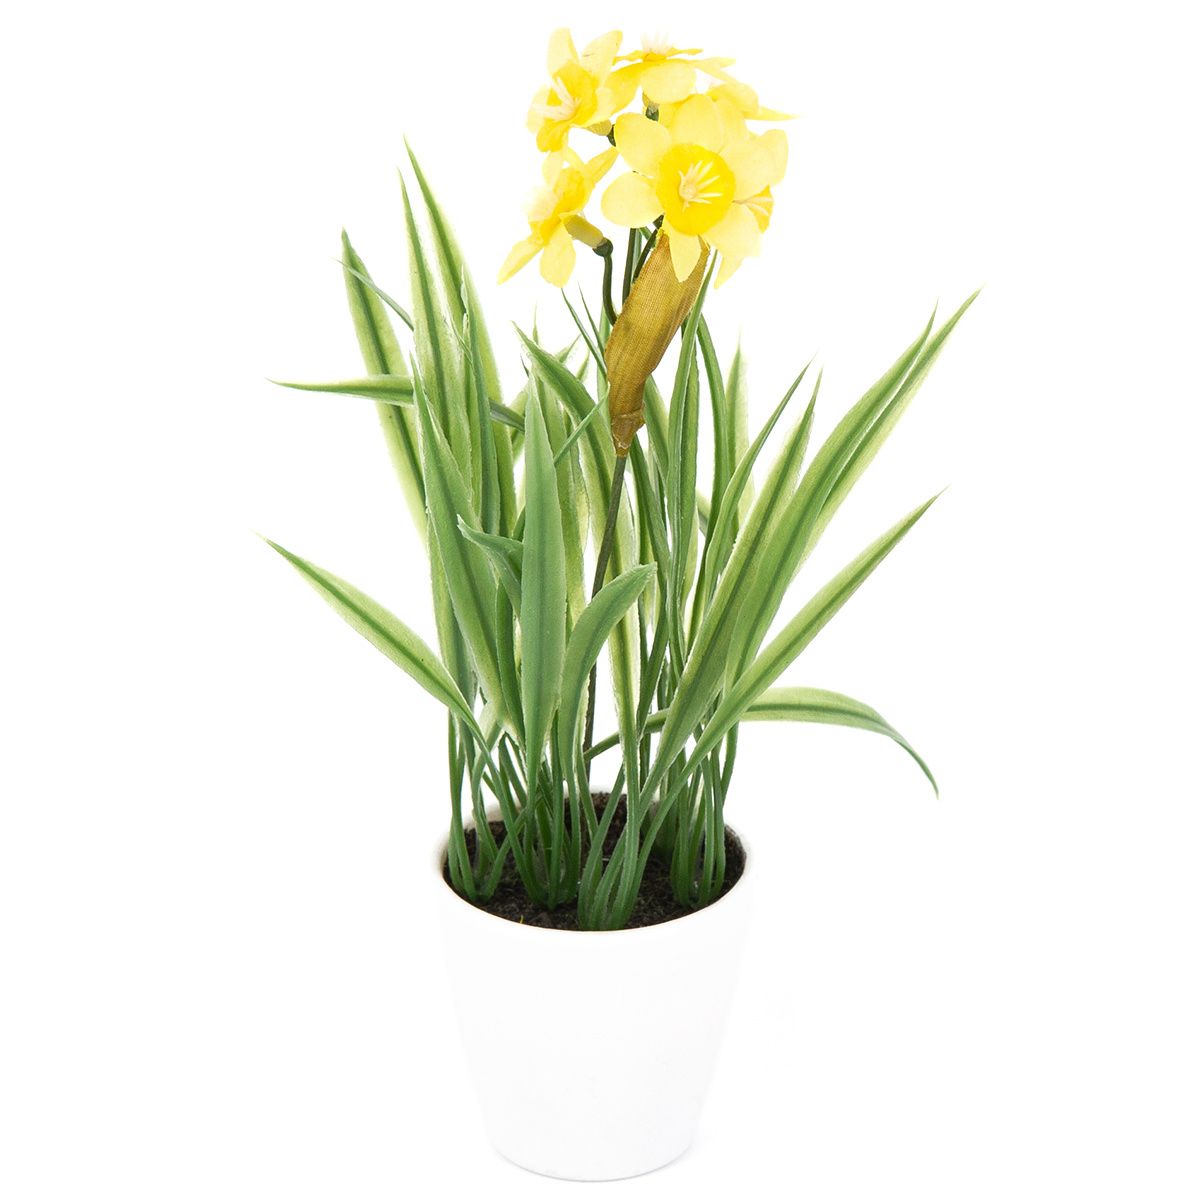 Umělá květina Narcis v květináči žlutá, 22 cm - 4home.cz